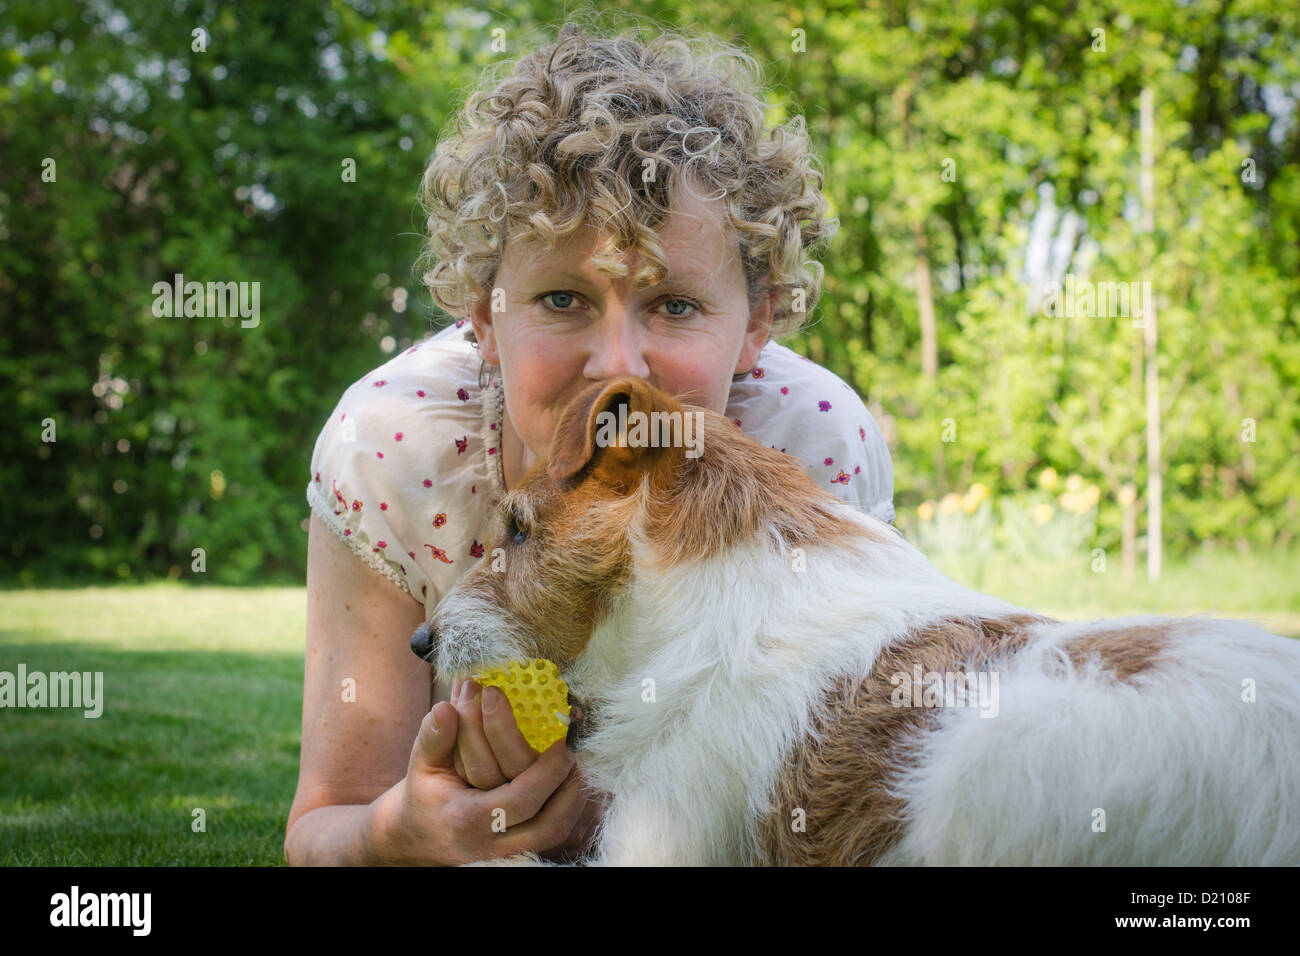 Jack Russell chien jouant avec une femme à poil dur Banque D'Images